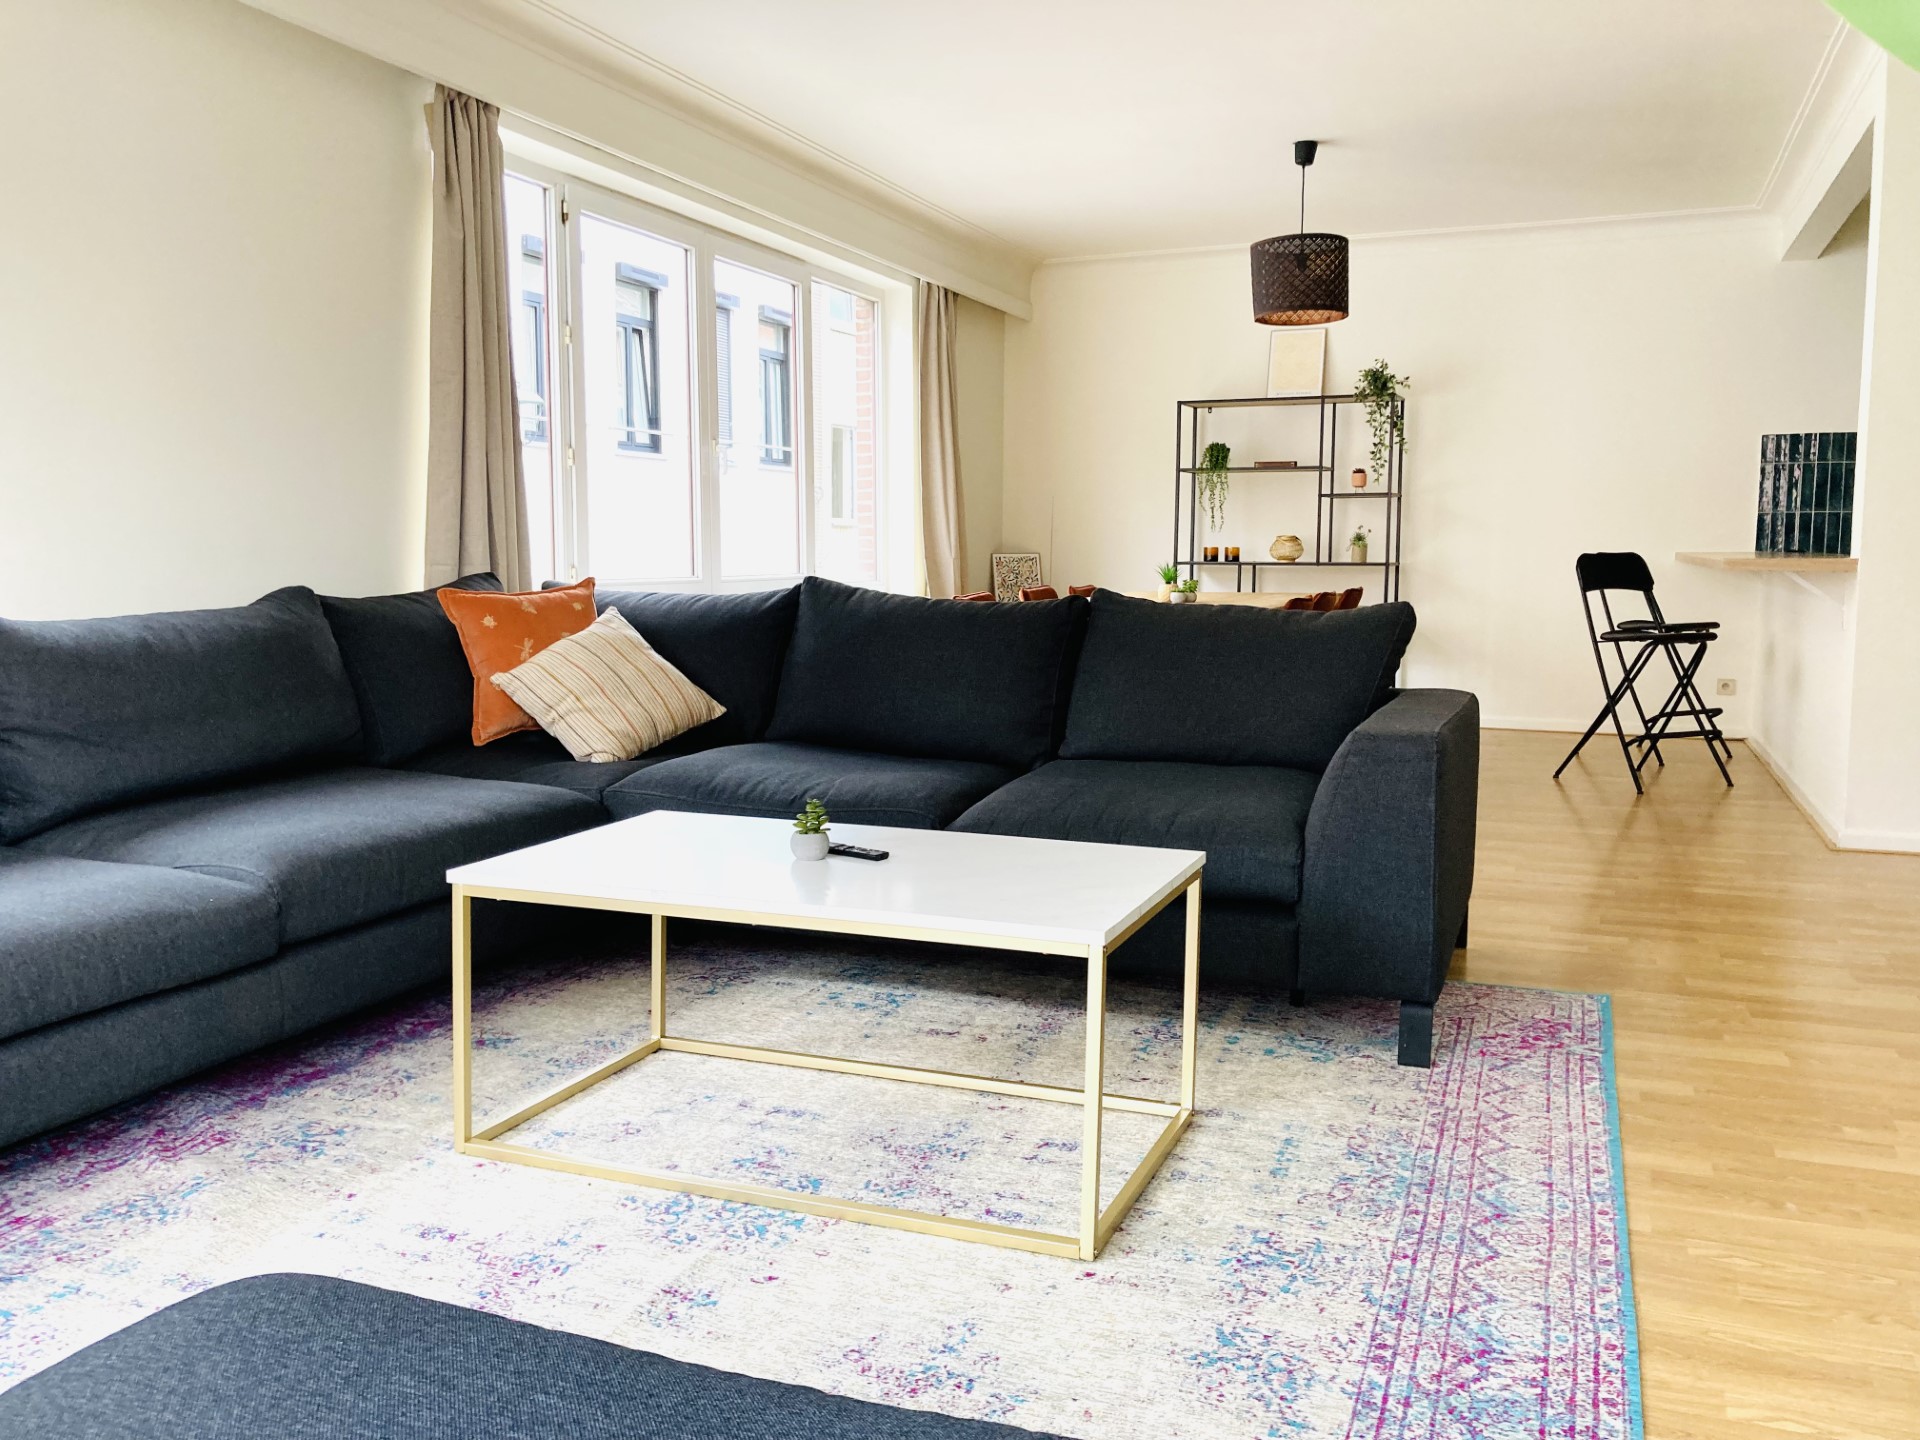 aparment for rent near antwerp - livingroom